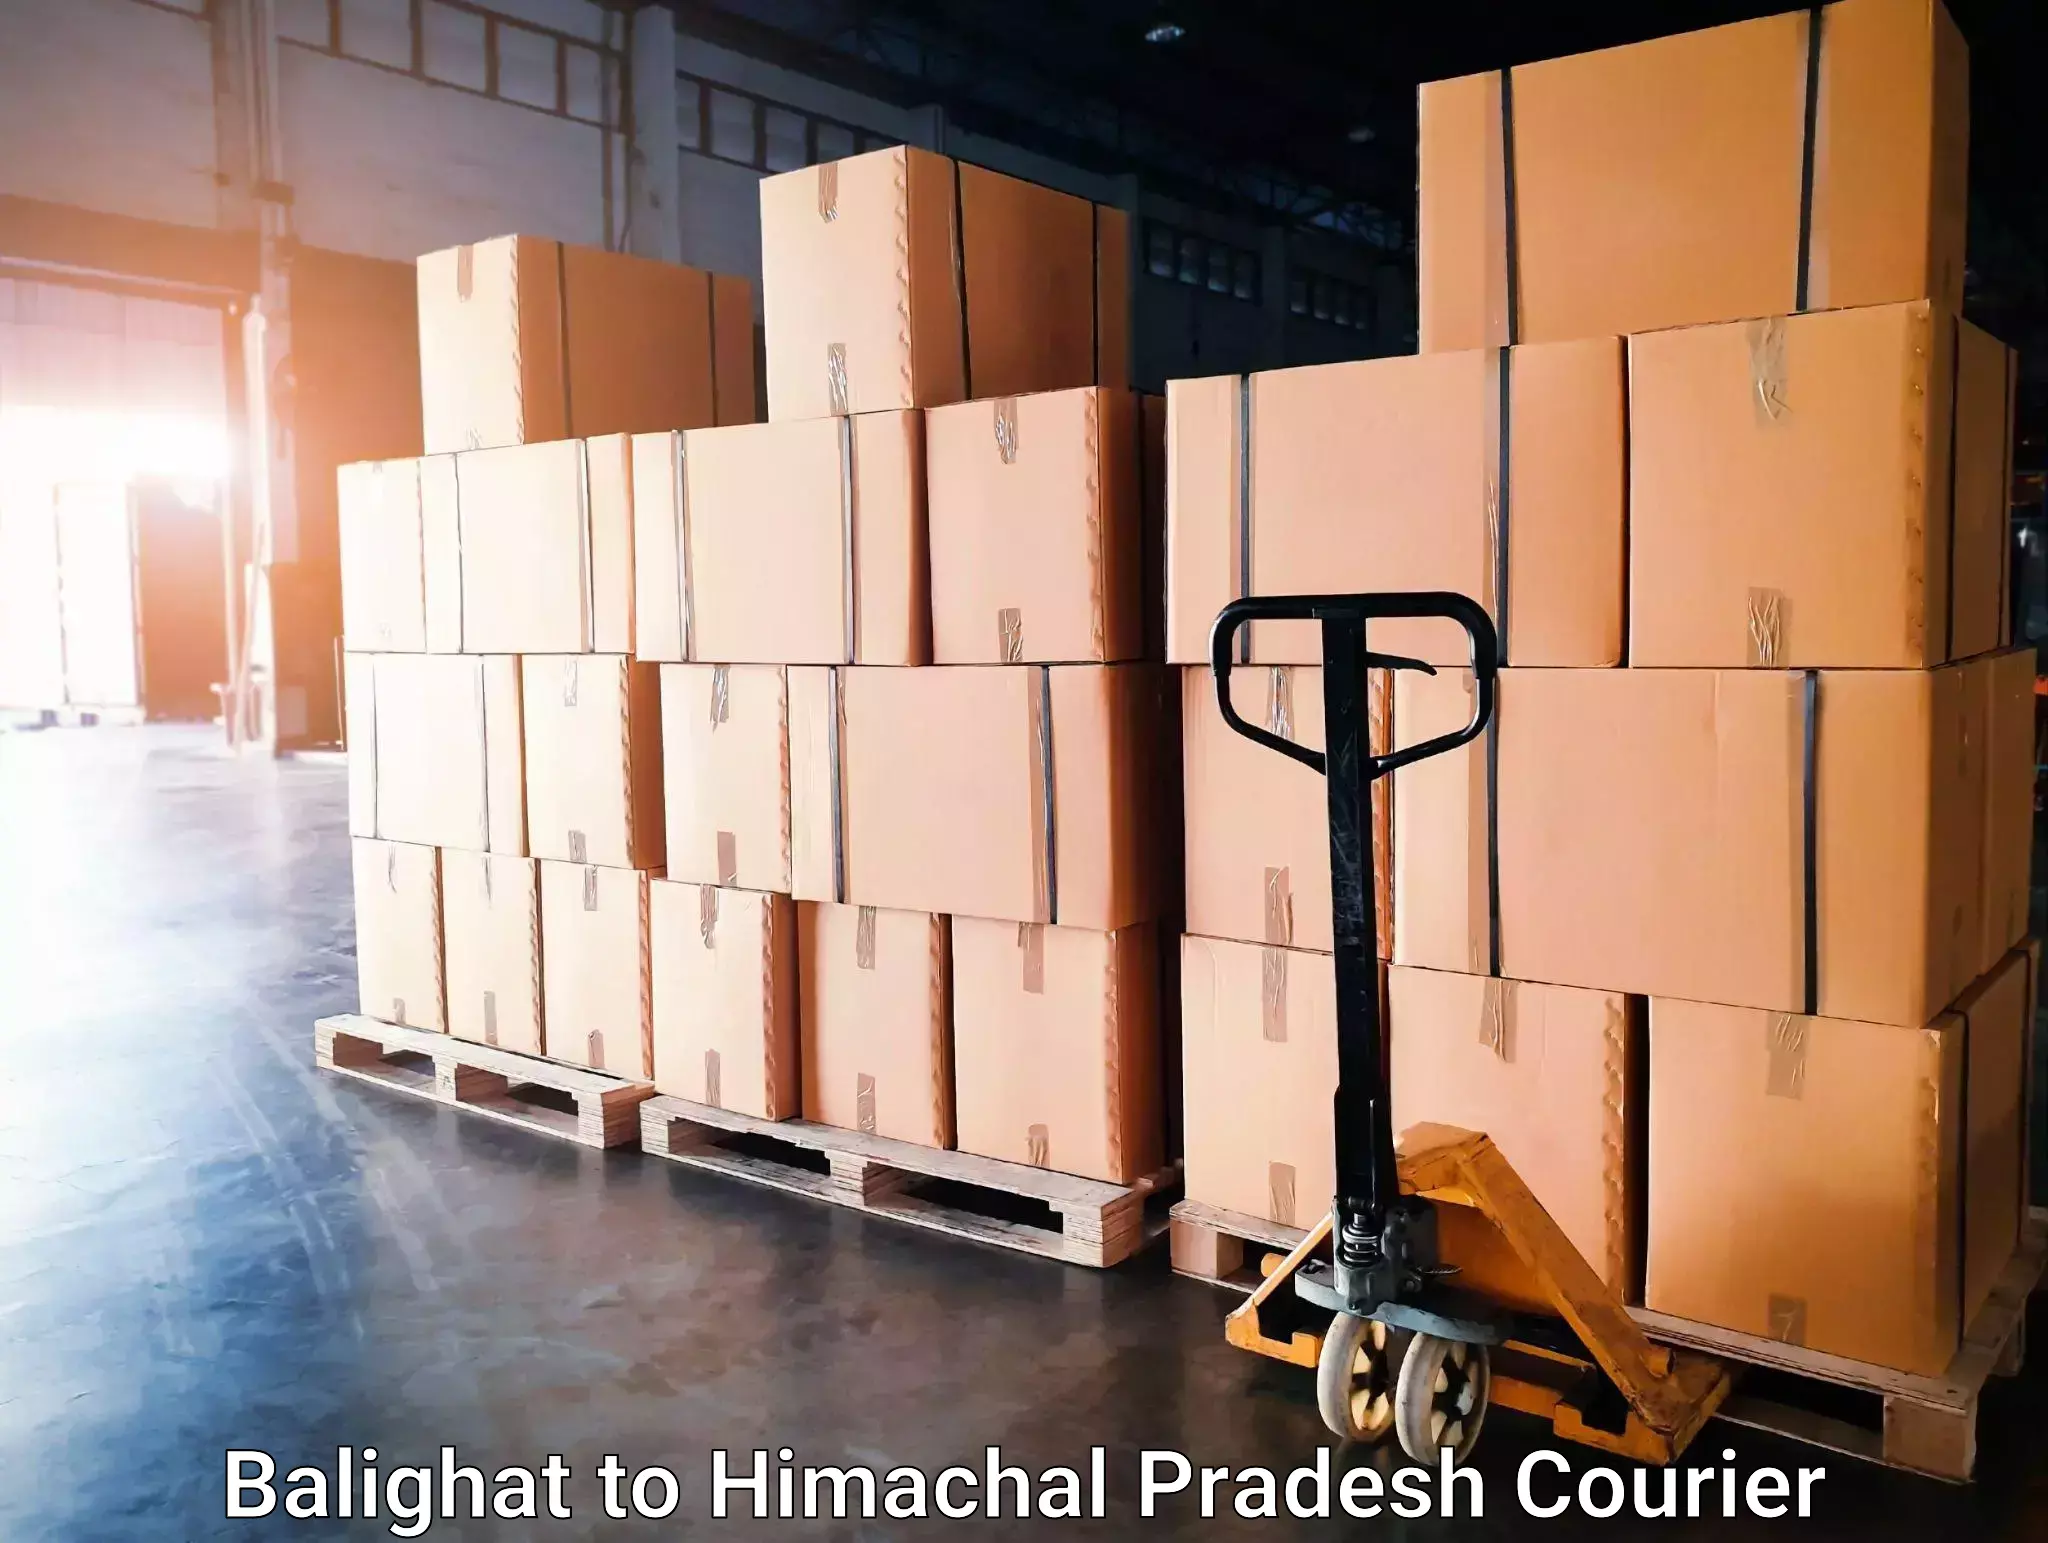 Doorstep delivery service Balighat to Himachal Pradesh